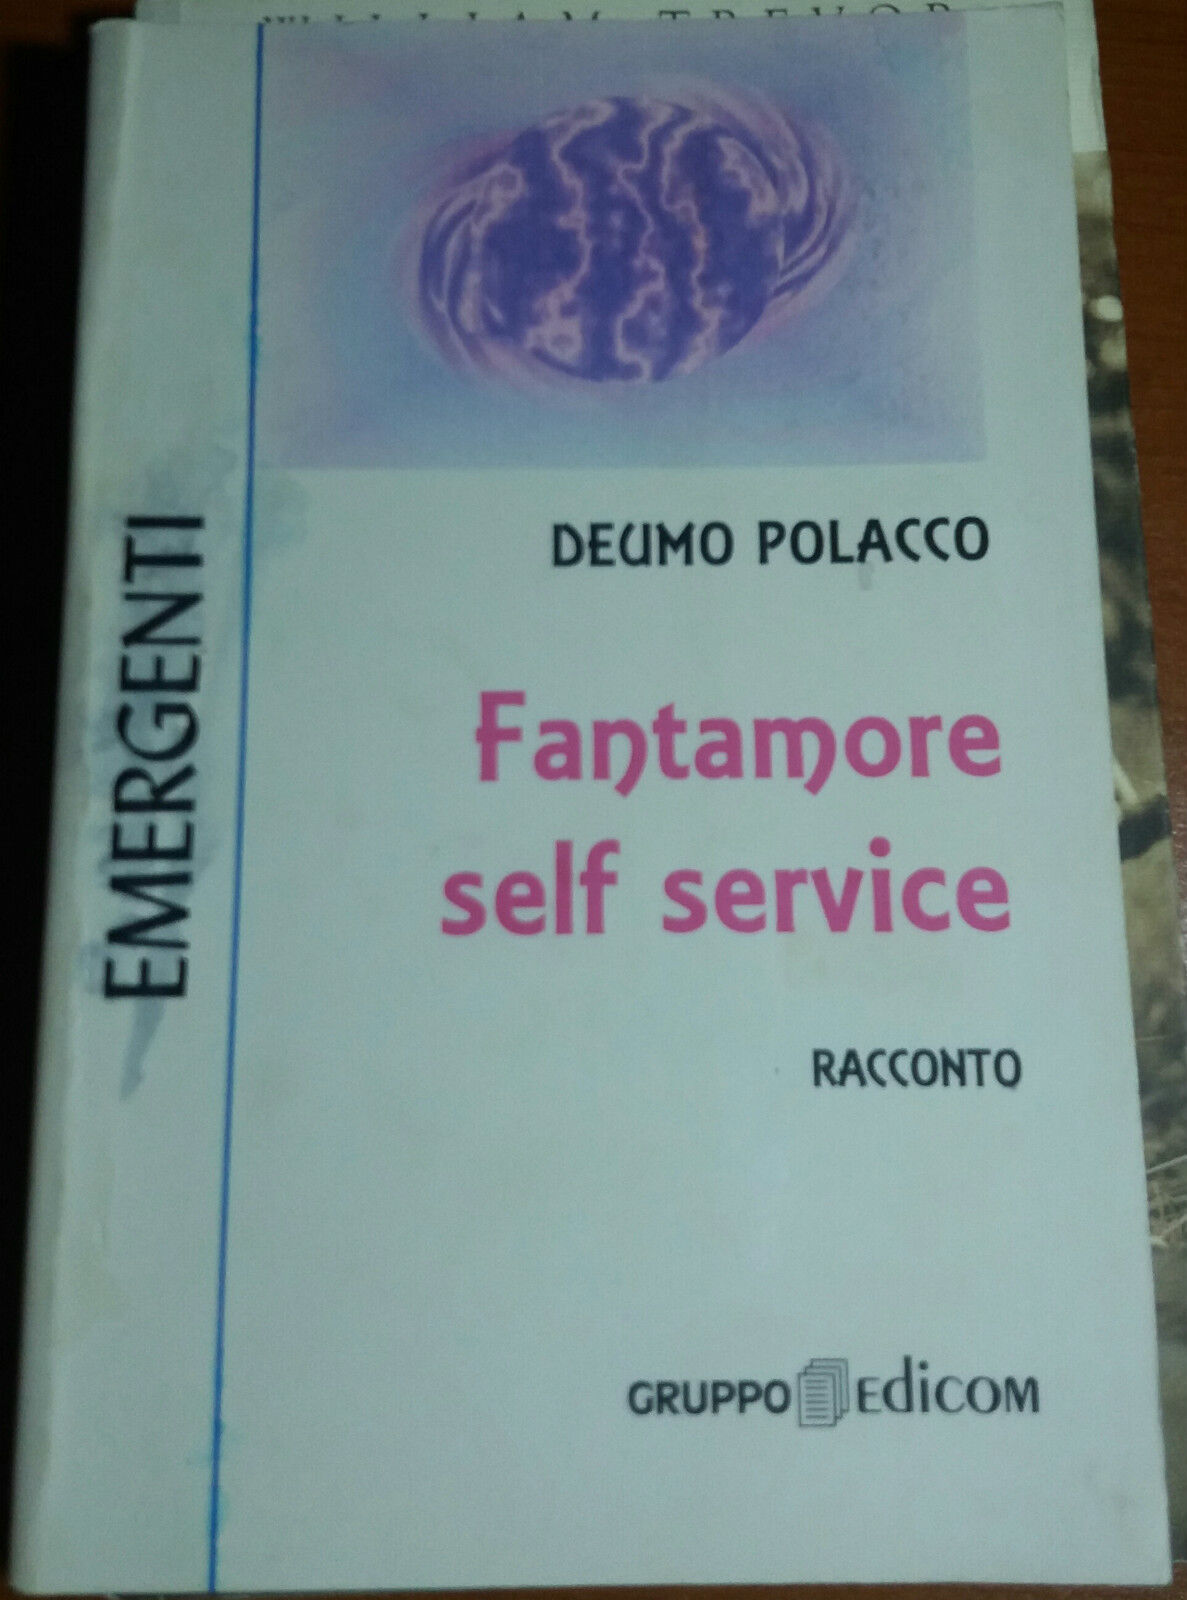 FANTAMORE SELF SERVICE - DEUMO POLACCO - GRUPPO EDICOM - 1998 - M